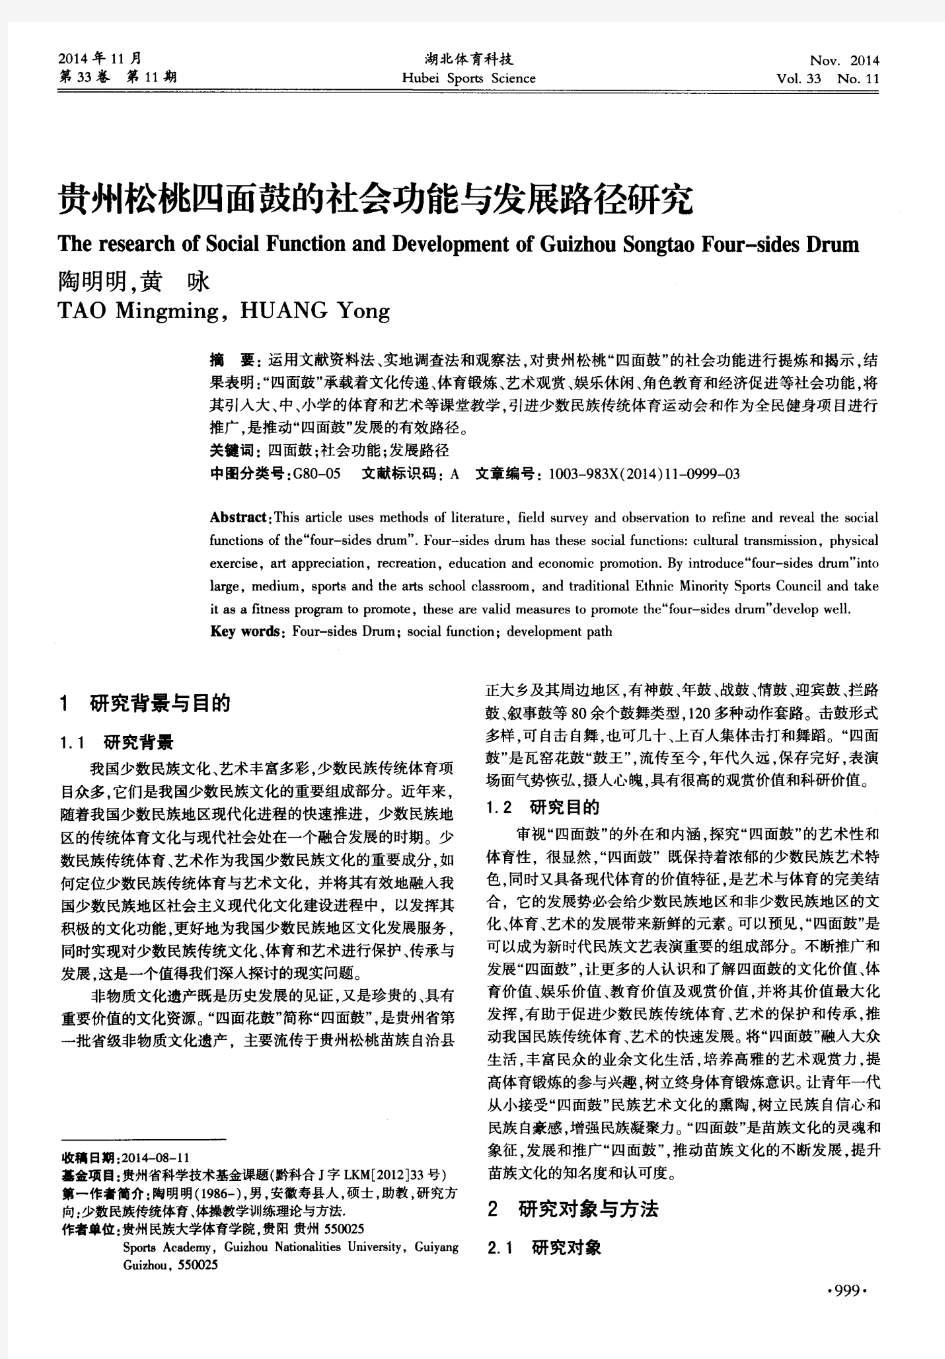 贵州松桃四面鼓的社会功能与发展路径研究